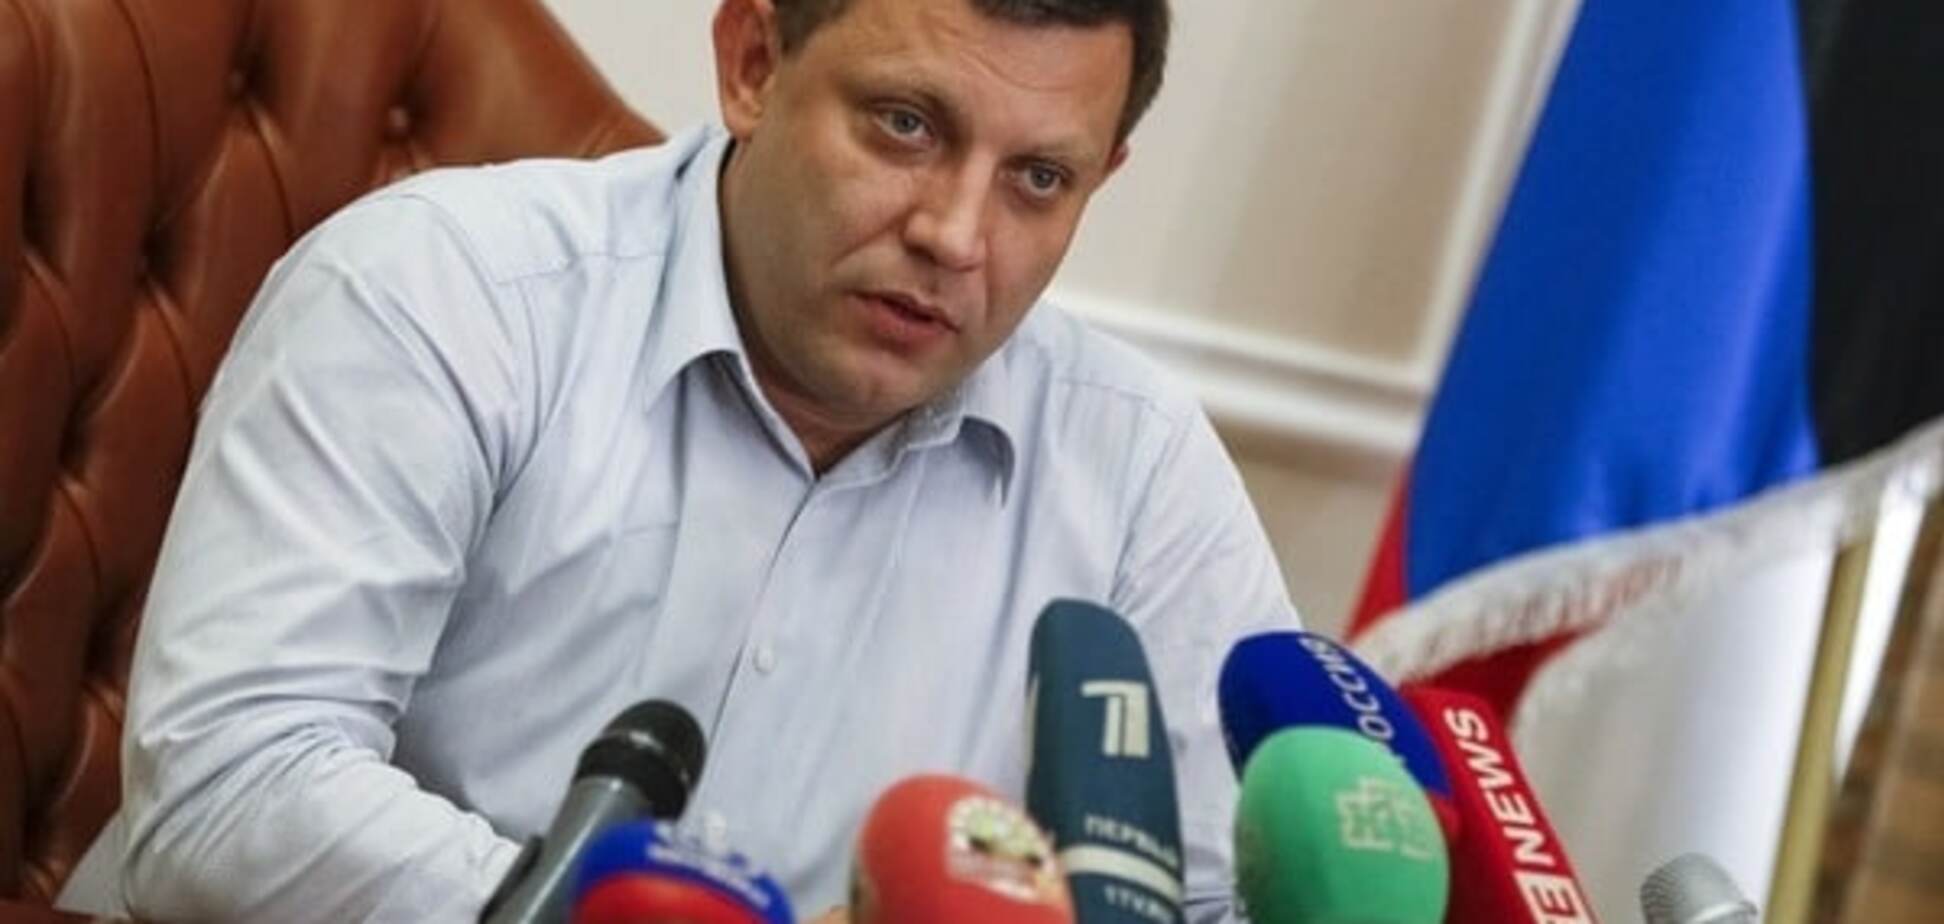 'Категорически против': Захарченко вновь высказался против выборов по украинским законам